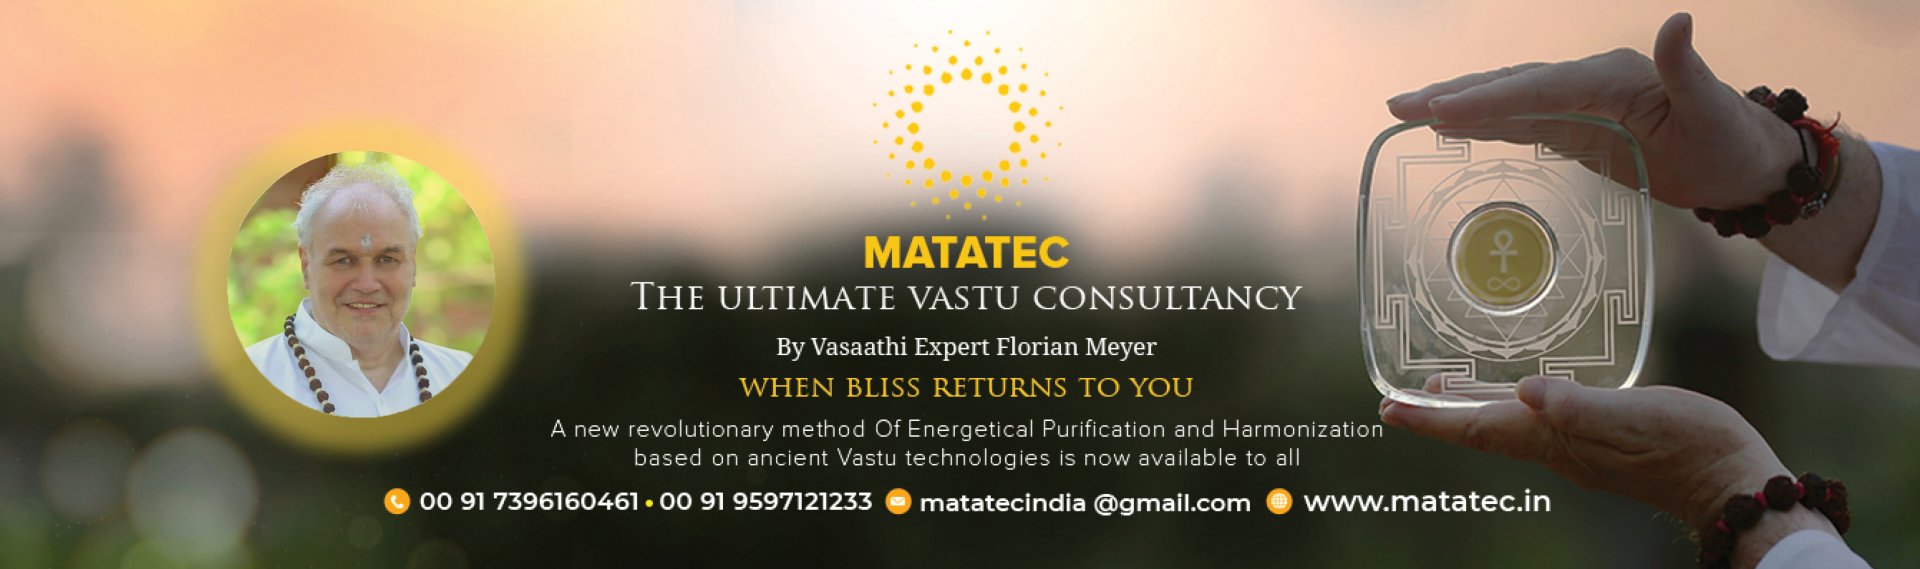 Matatec - the ultimate vastu consultancy	